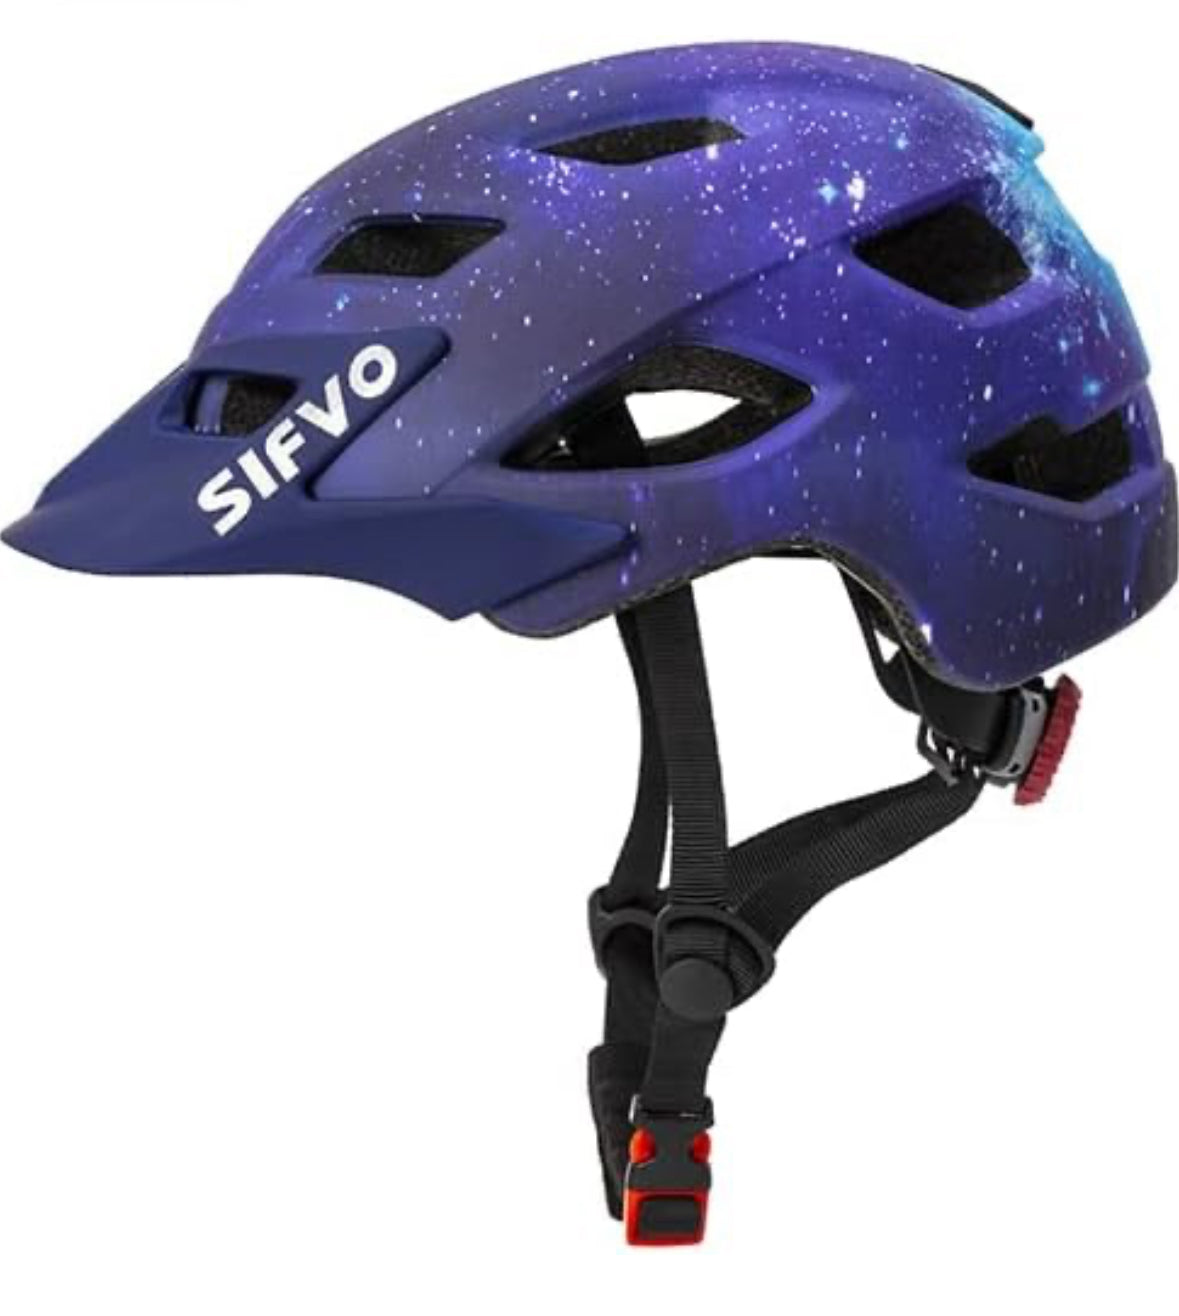 SIFVO - Casco de bicicleta